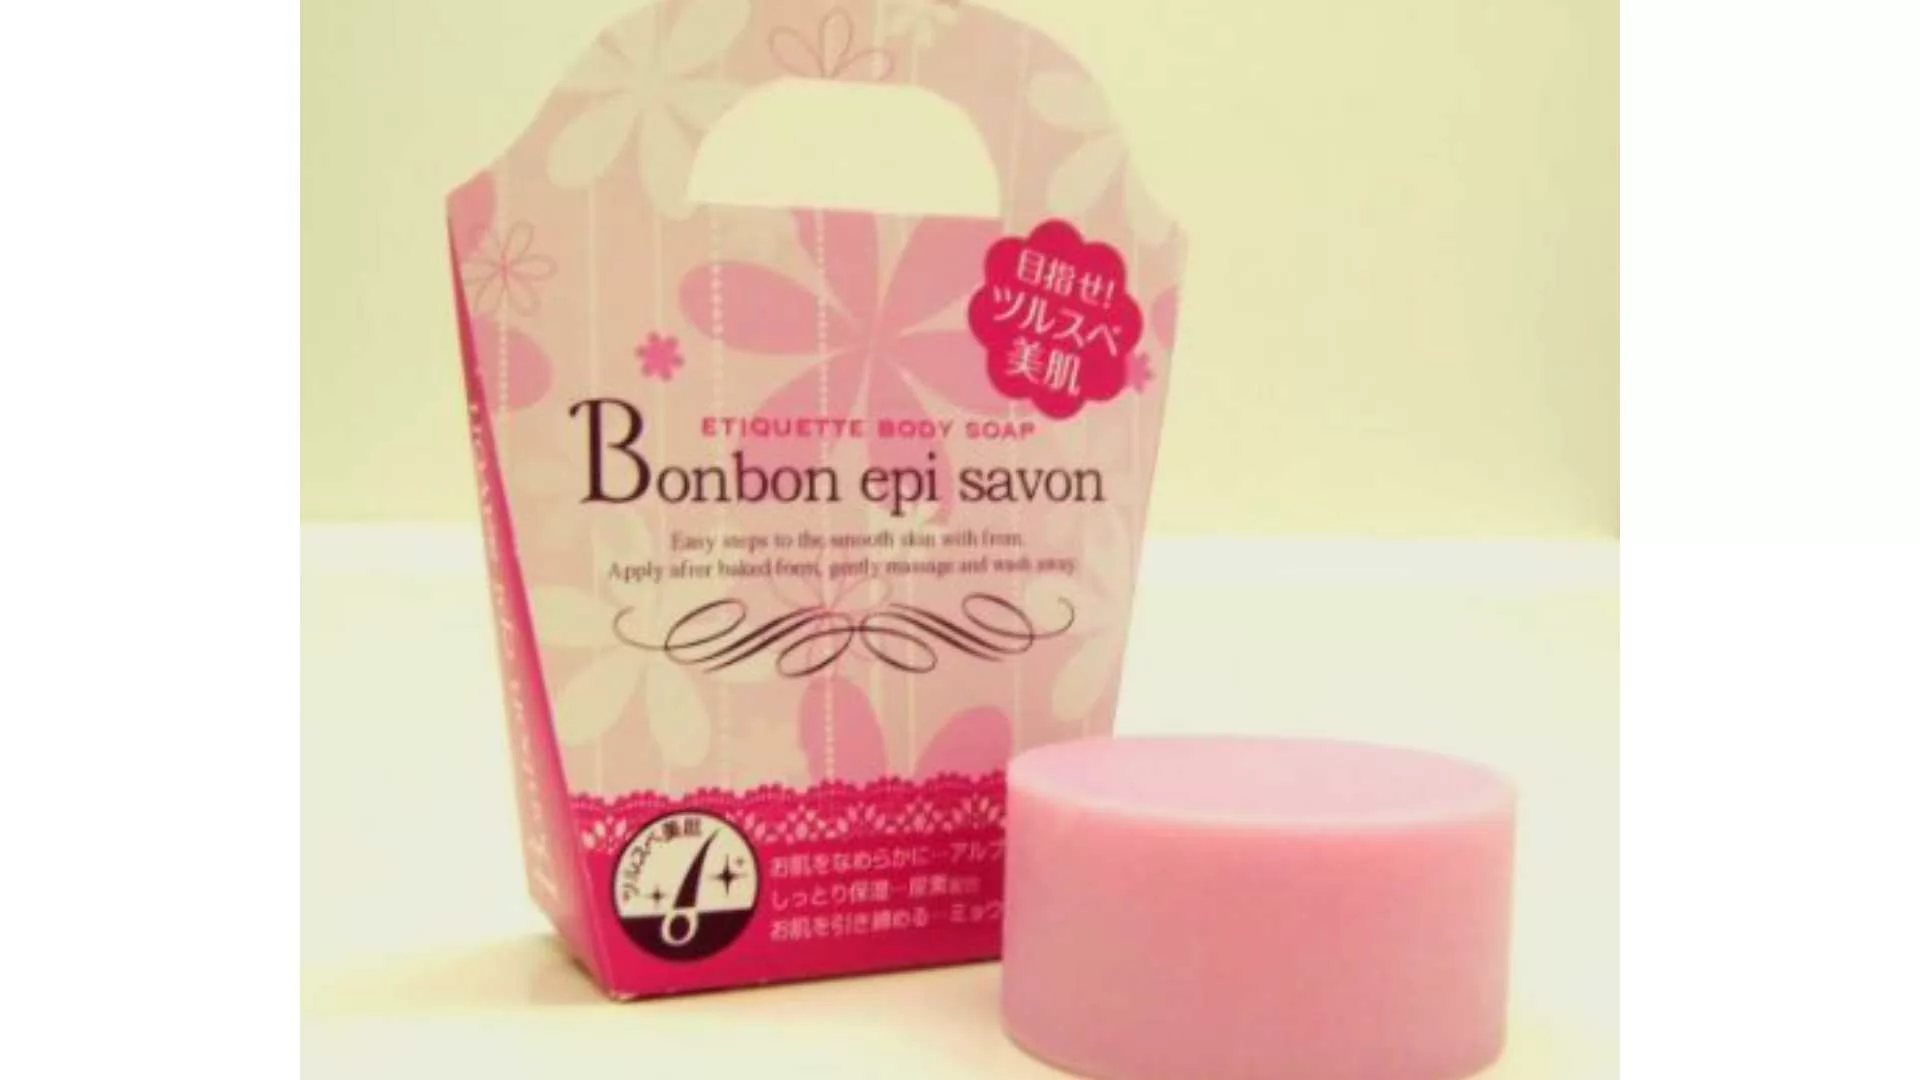  Epi Savon Hair Removal Soap By Bonbon